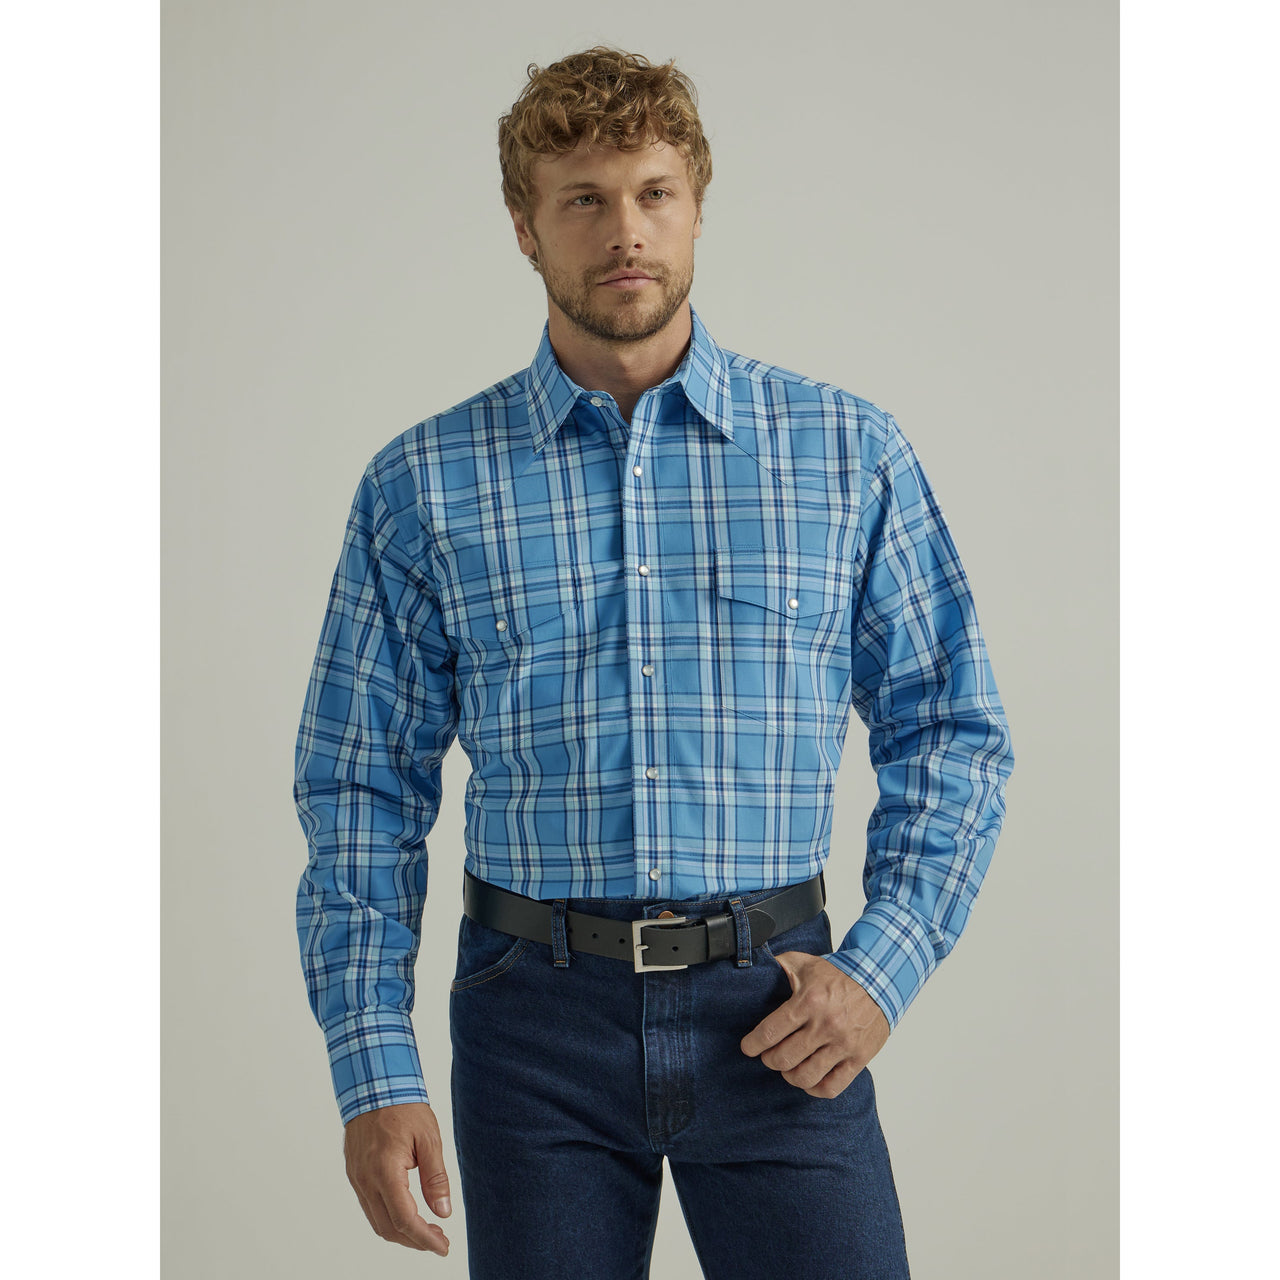 Wrangler Men's Wrinkle Resistant Long Sleeve Shirt - Blue